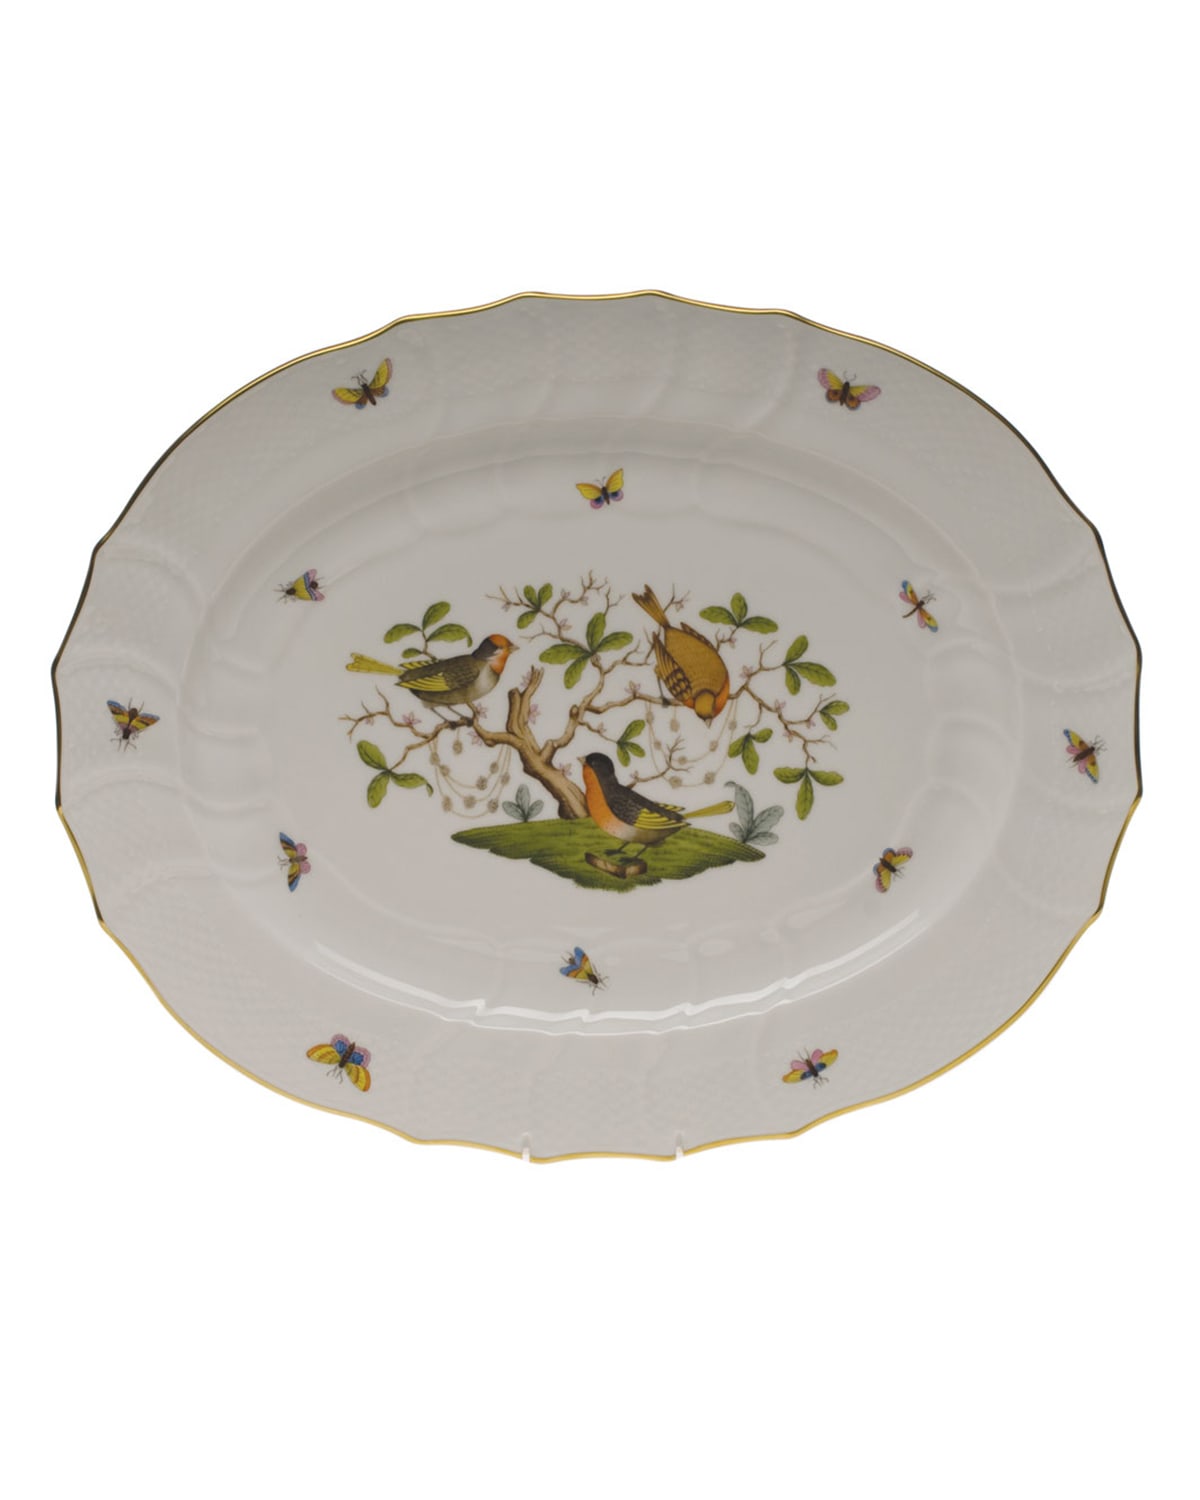 Rothschild Bird Turkey Platter 18"